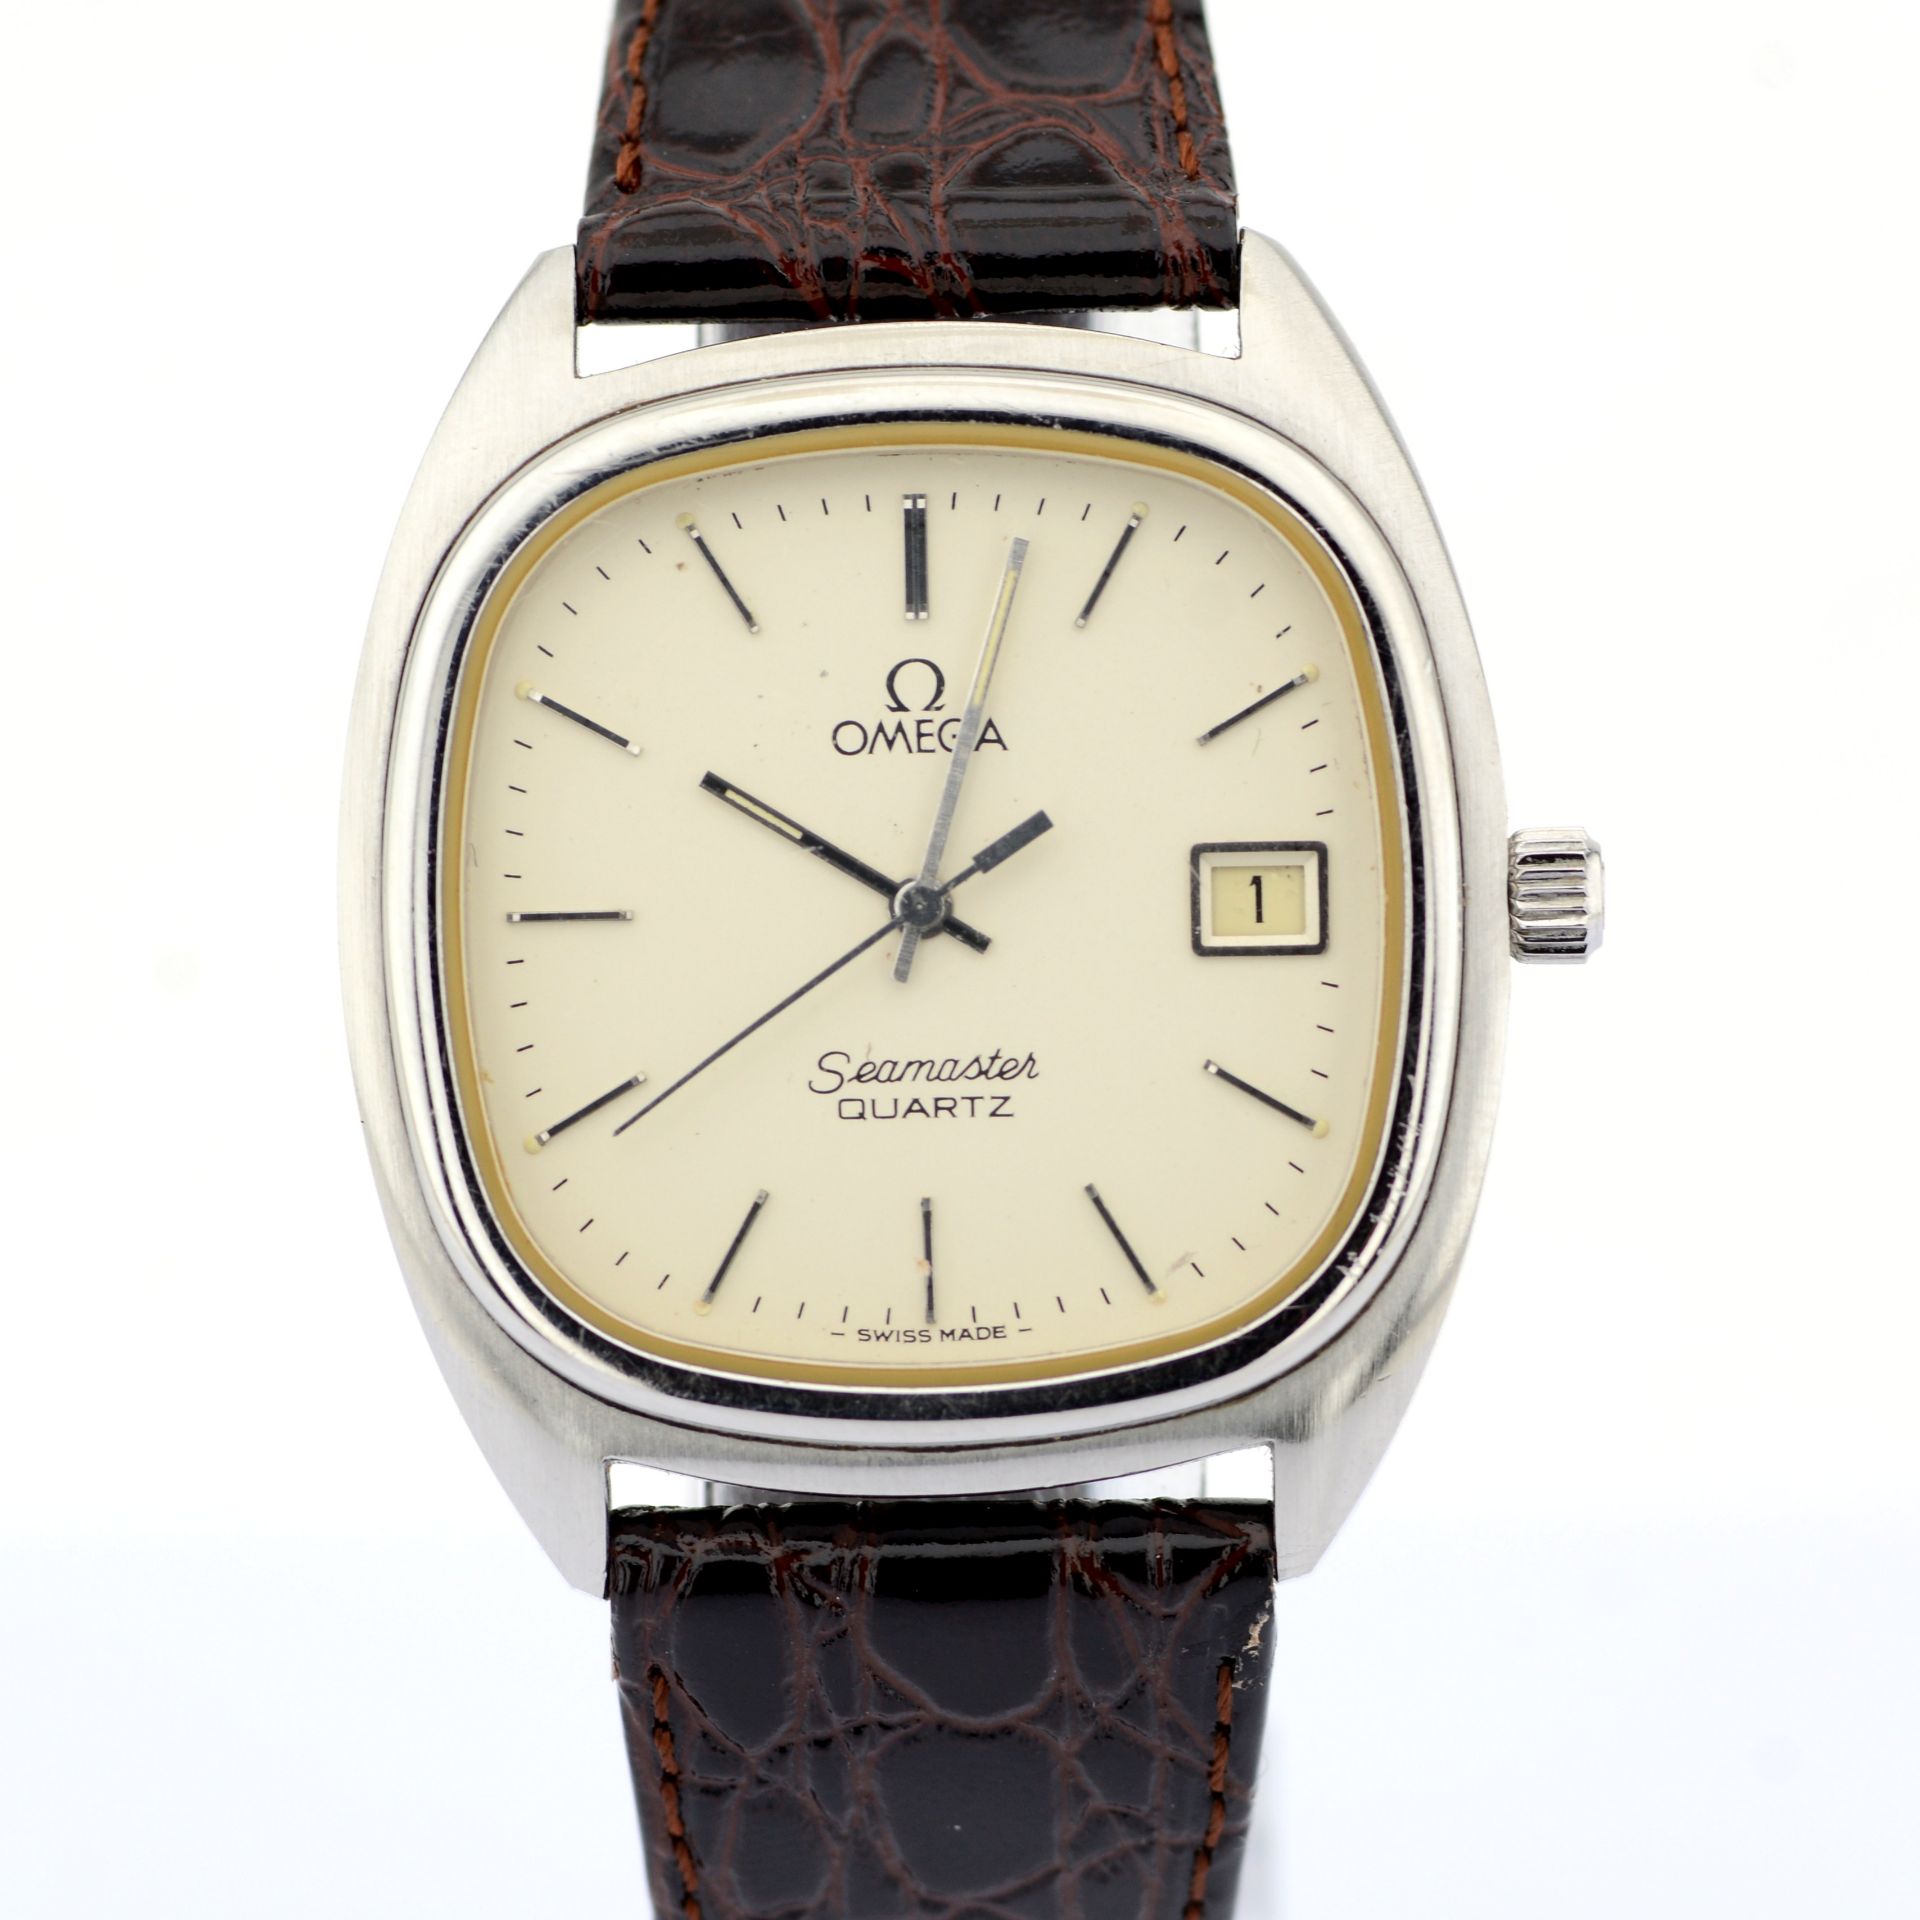 Omega / Seamaster Date 34 mm - Gentlmen's Steel Wrist Watch - Image 8 of 8